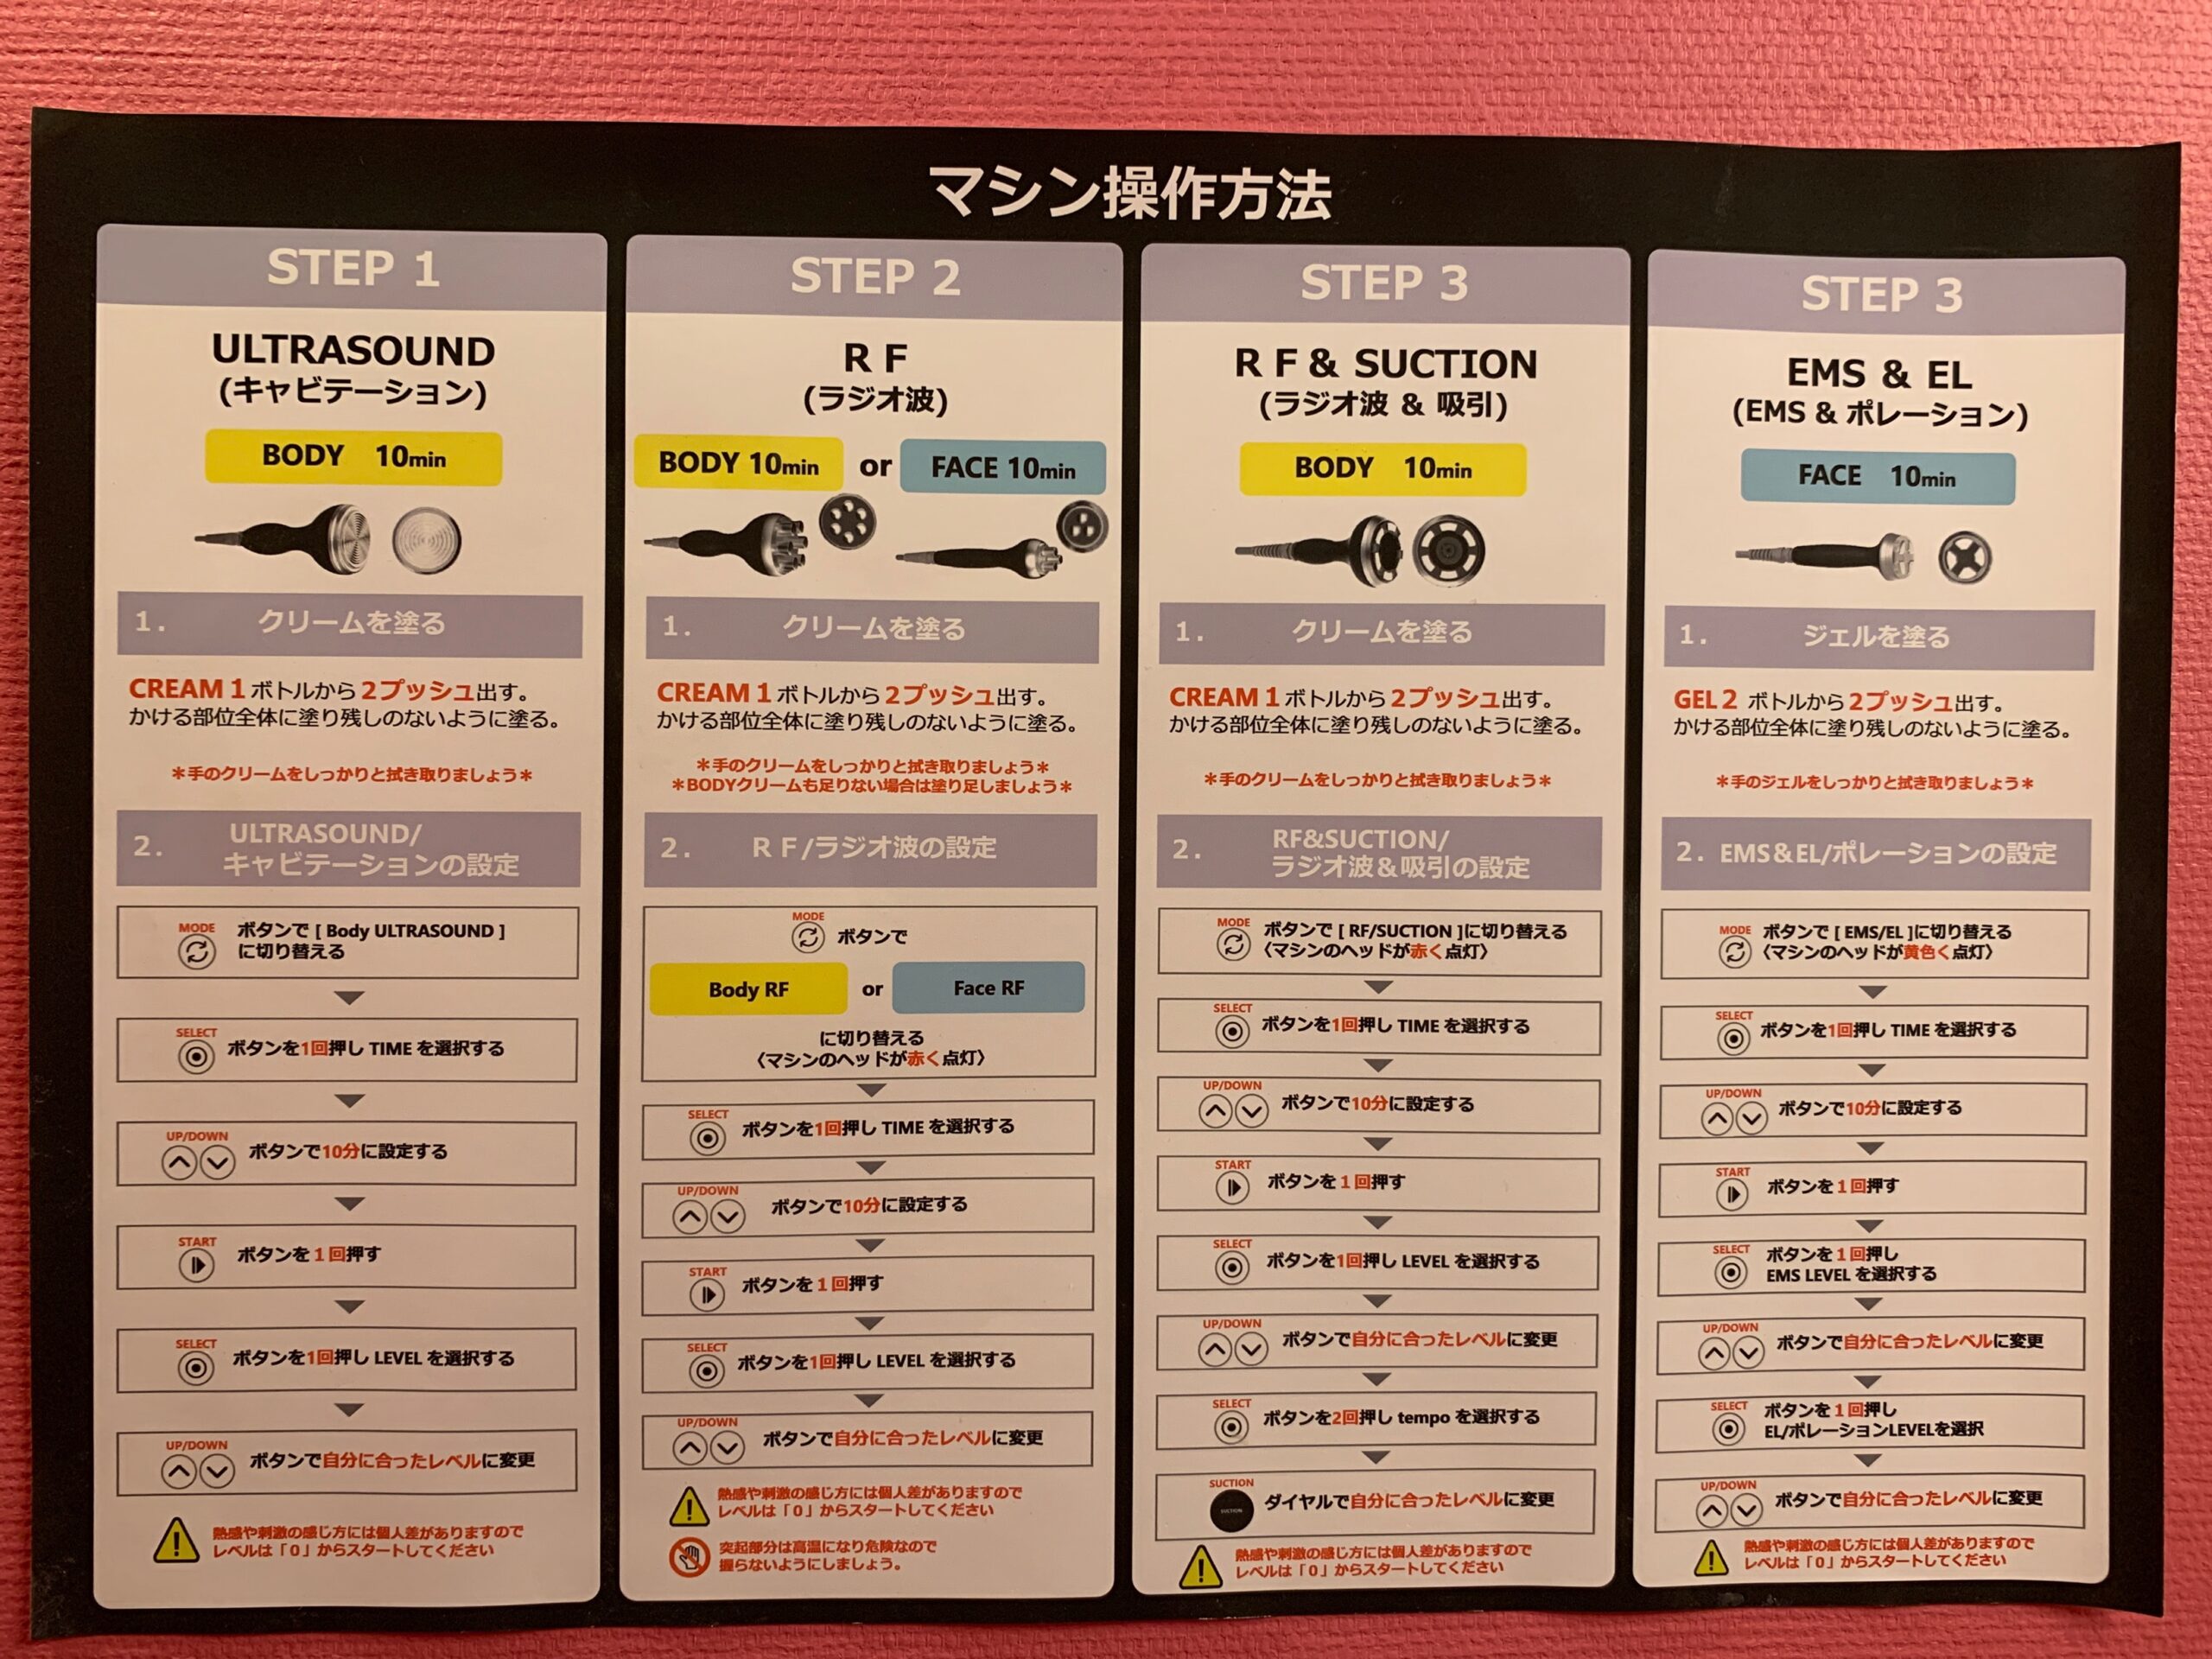 ヴィクトリアセルフエステ恵比寿店のマシンの操作方法のポスター